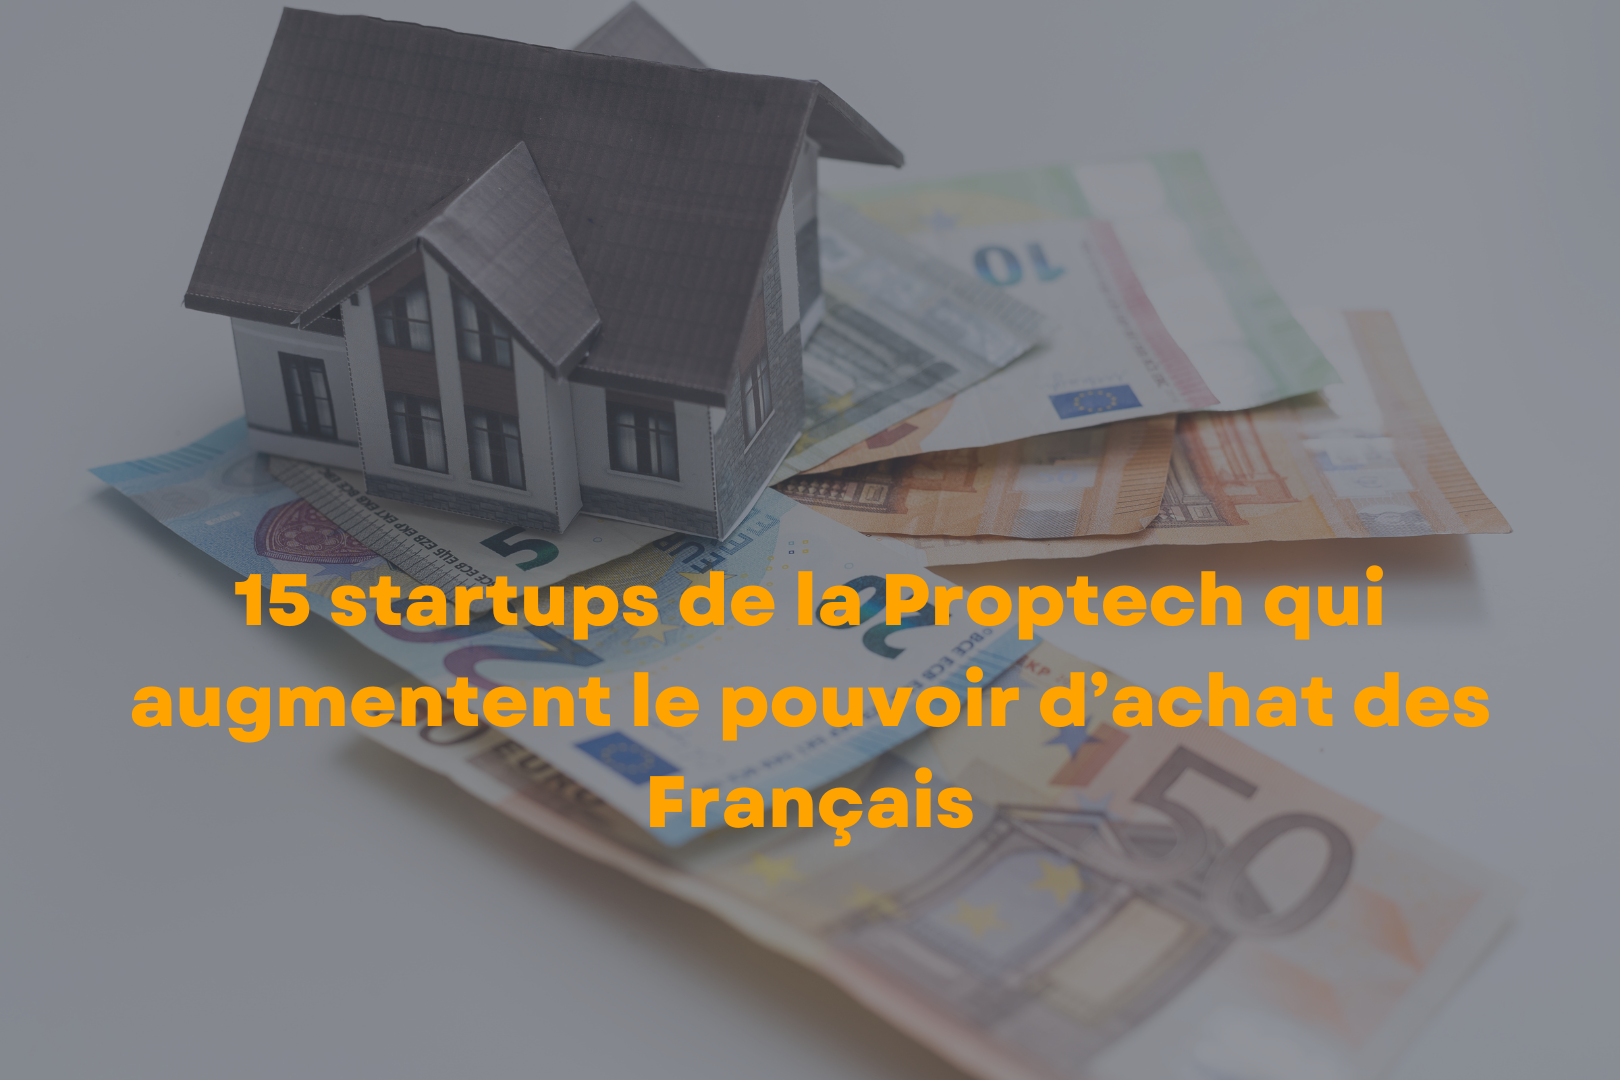 15 Startups De La Proptech Qui Augmentent Le Pouvoir D’achat Des Français